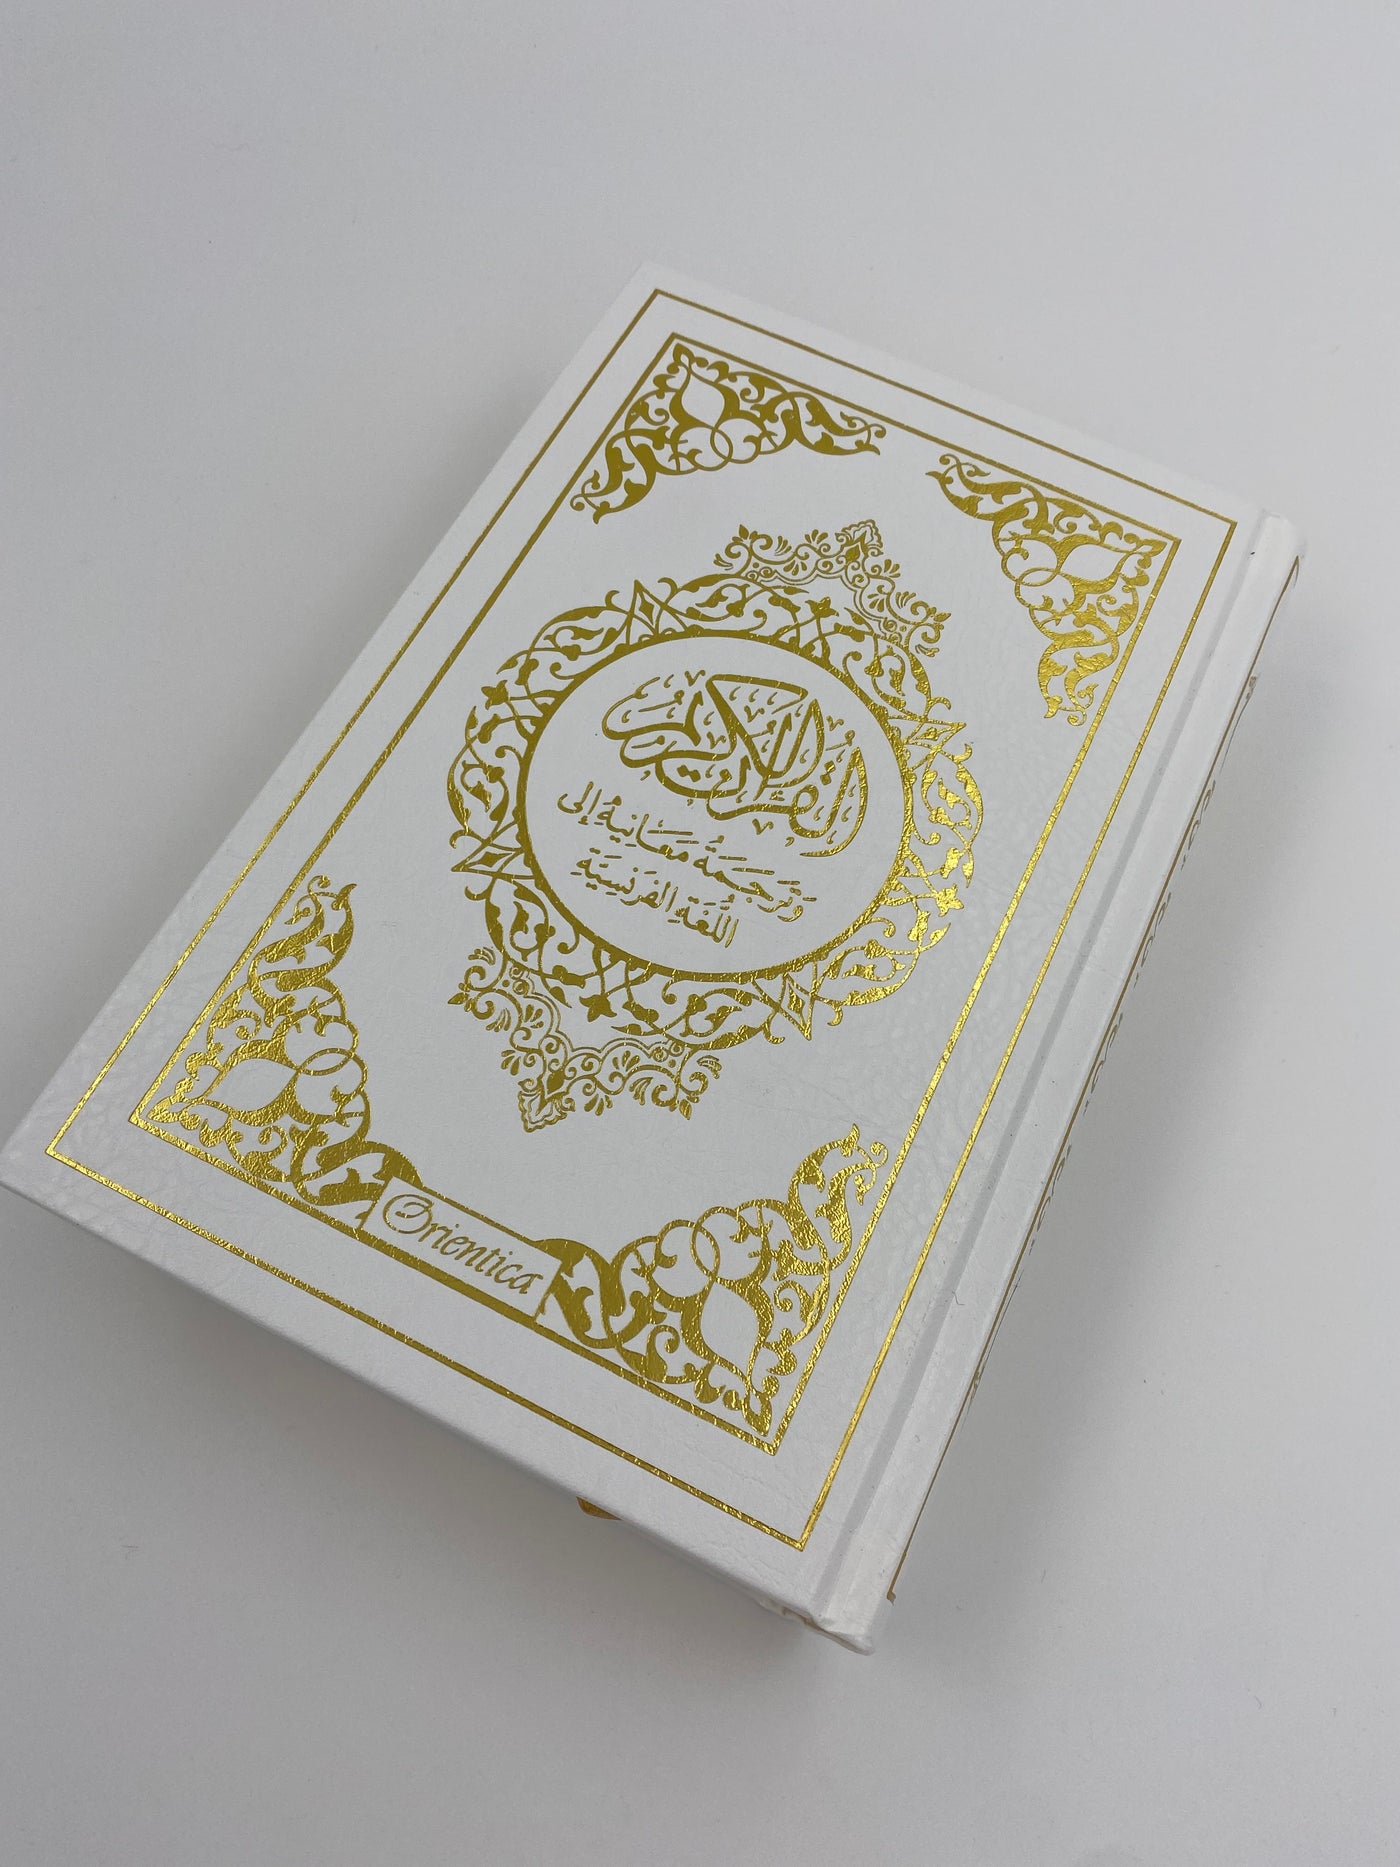 Der Edle Koran und die französische Übersetzung seiner Bedeutungen WEISS